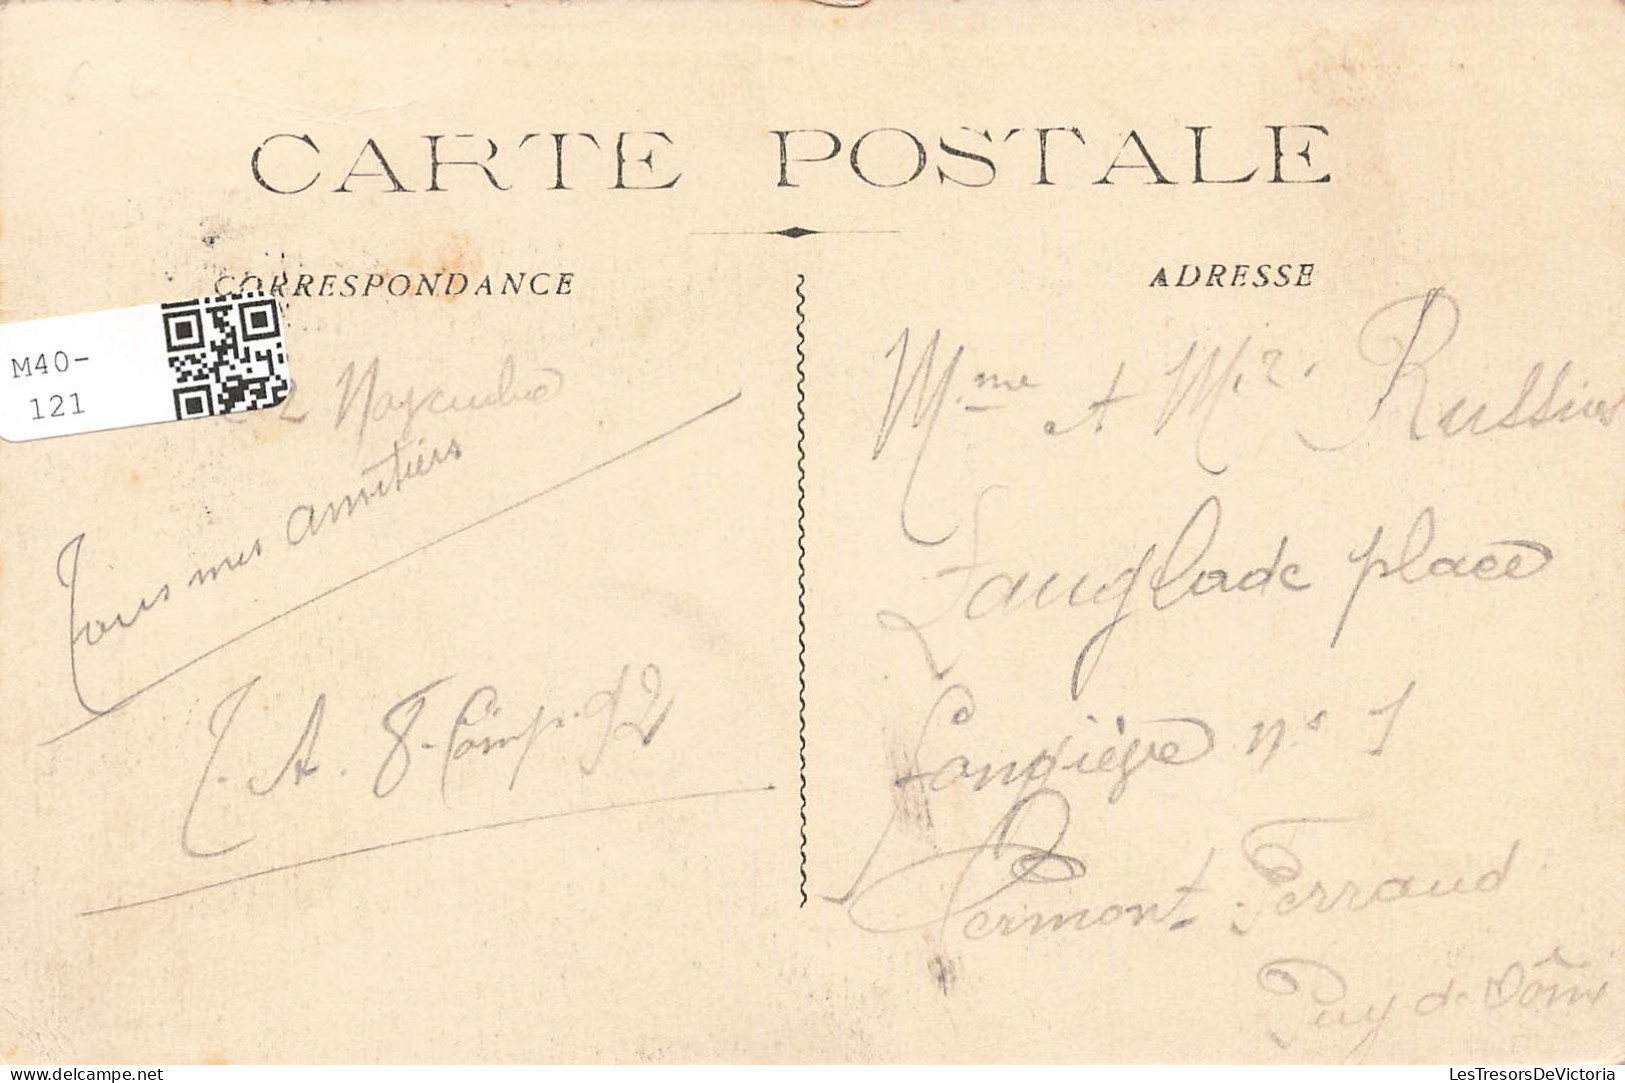 FRANCE - La Courtine - Campement De La 1ère Brigade - Carte Postale Ancienne - La Courtine